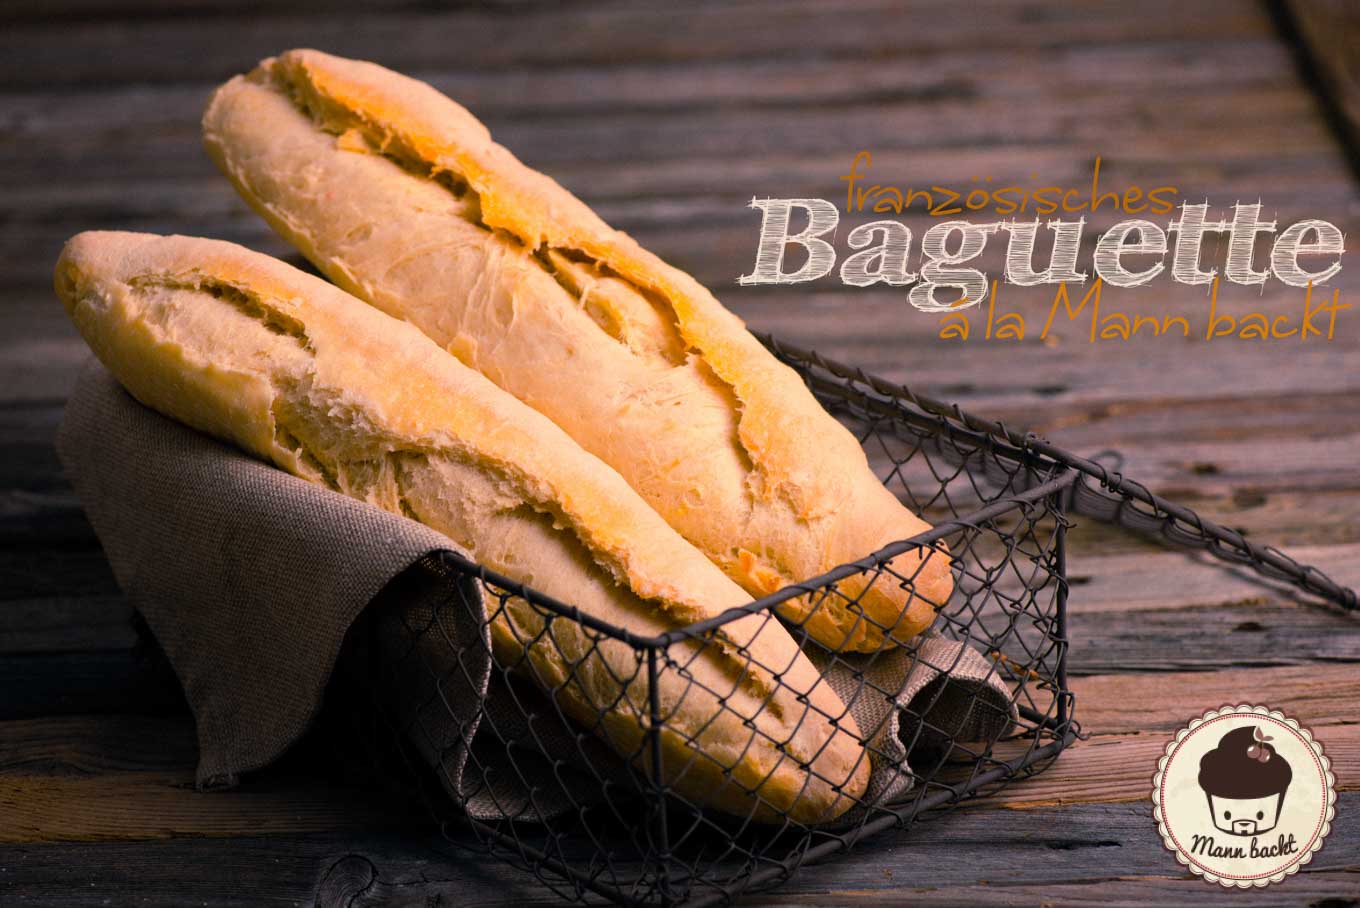 Baguette Mann backt Marian Moschen Rezept Brot backen (4 von 4)